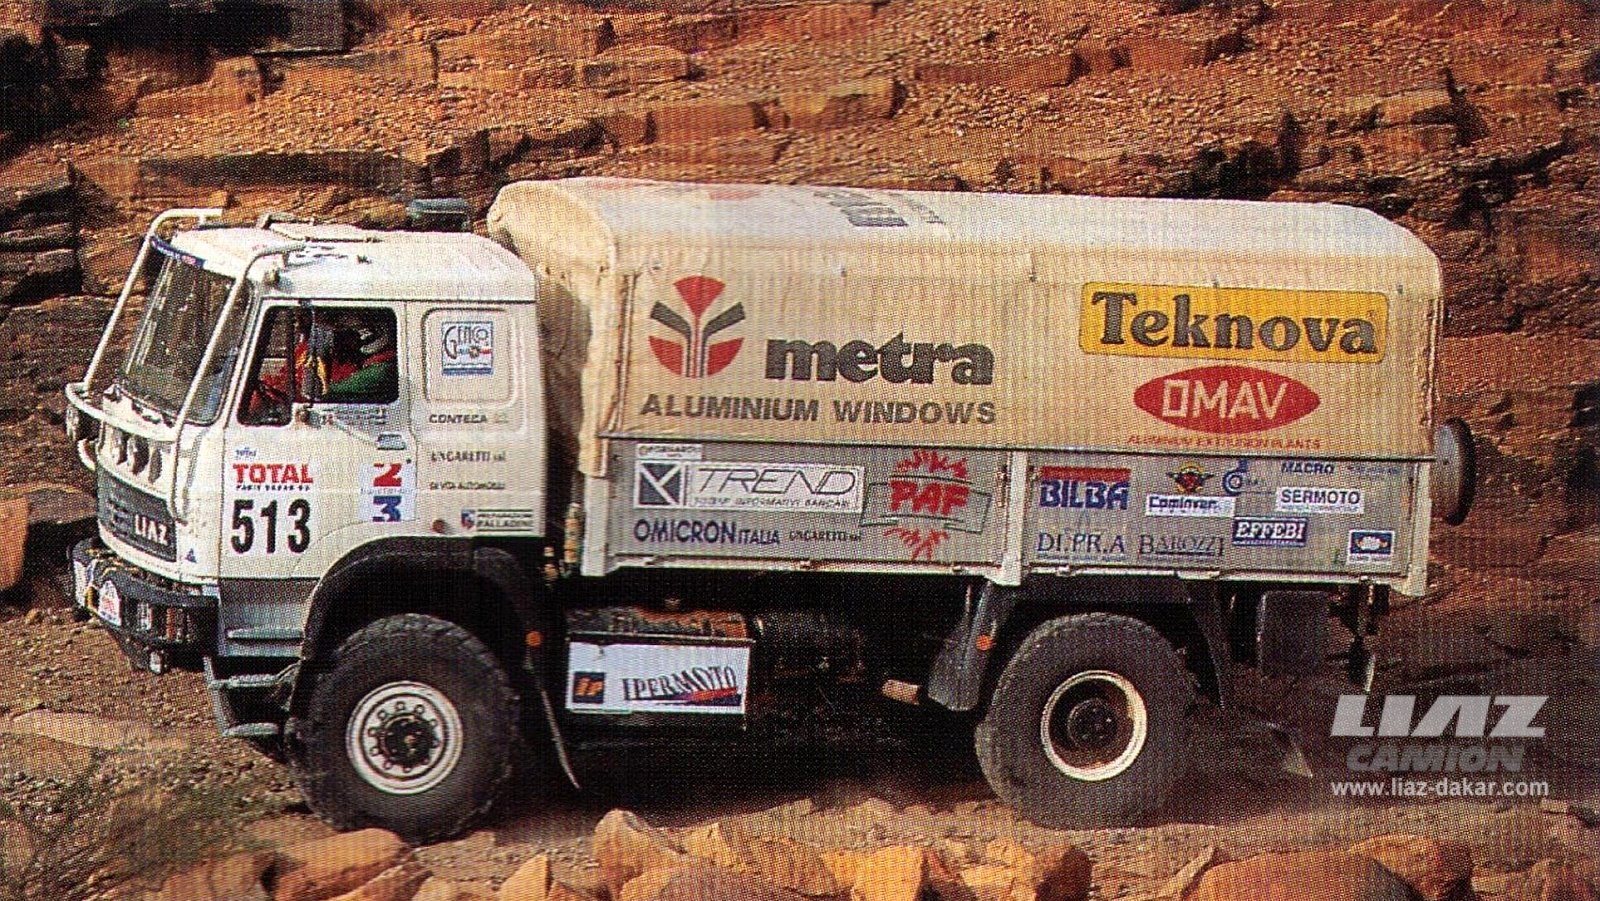 LIAZ Dakar 93